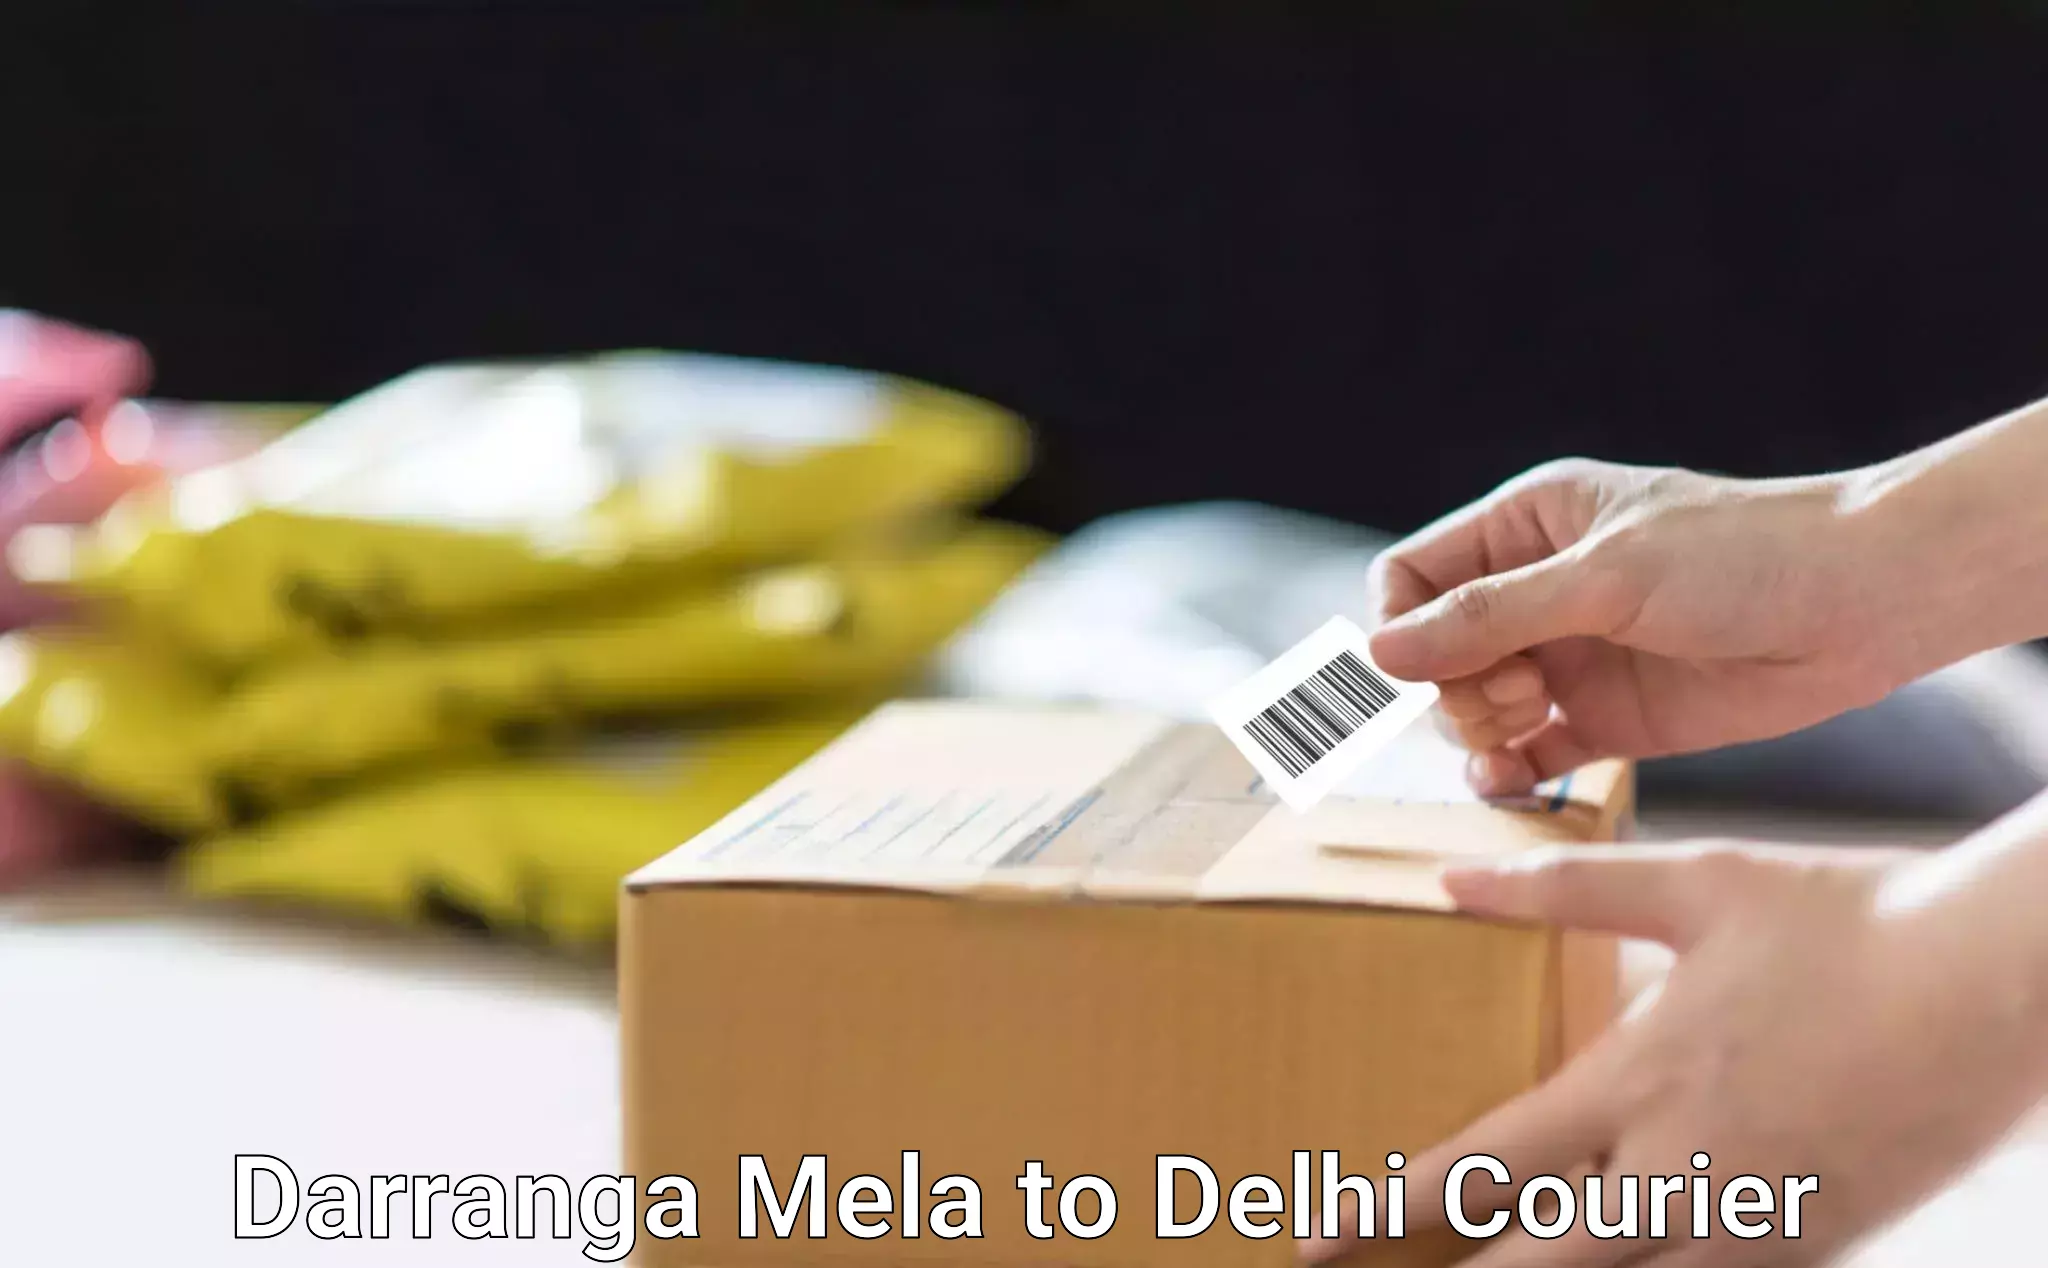 High-priority parcel service Darranga Mela to Delhi